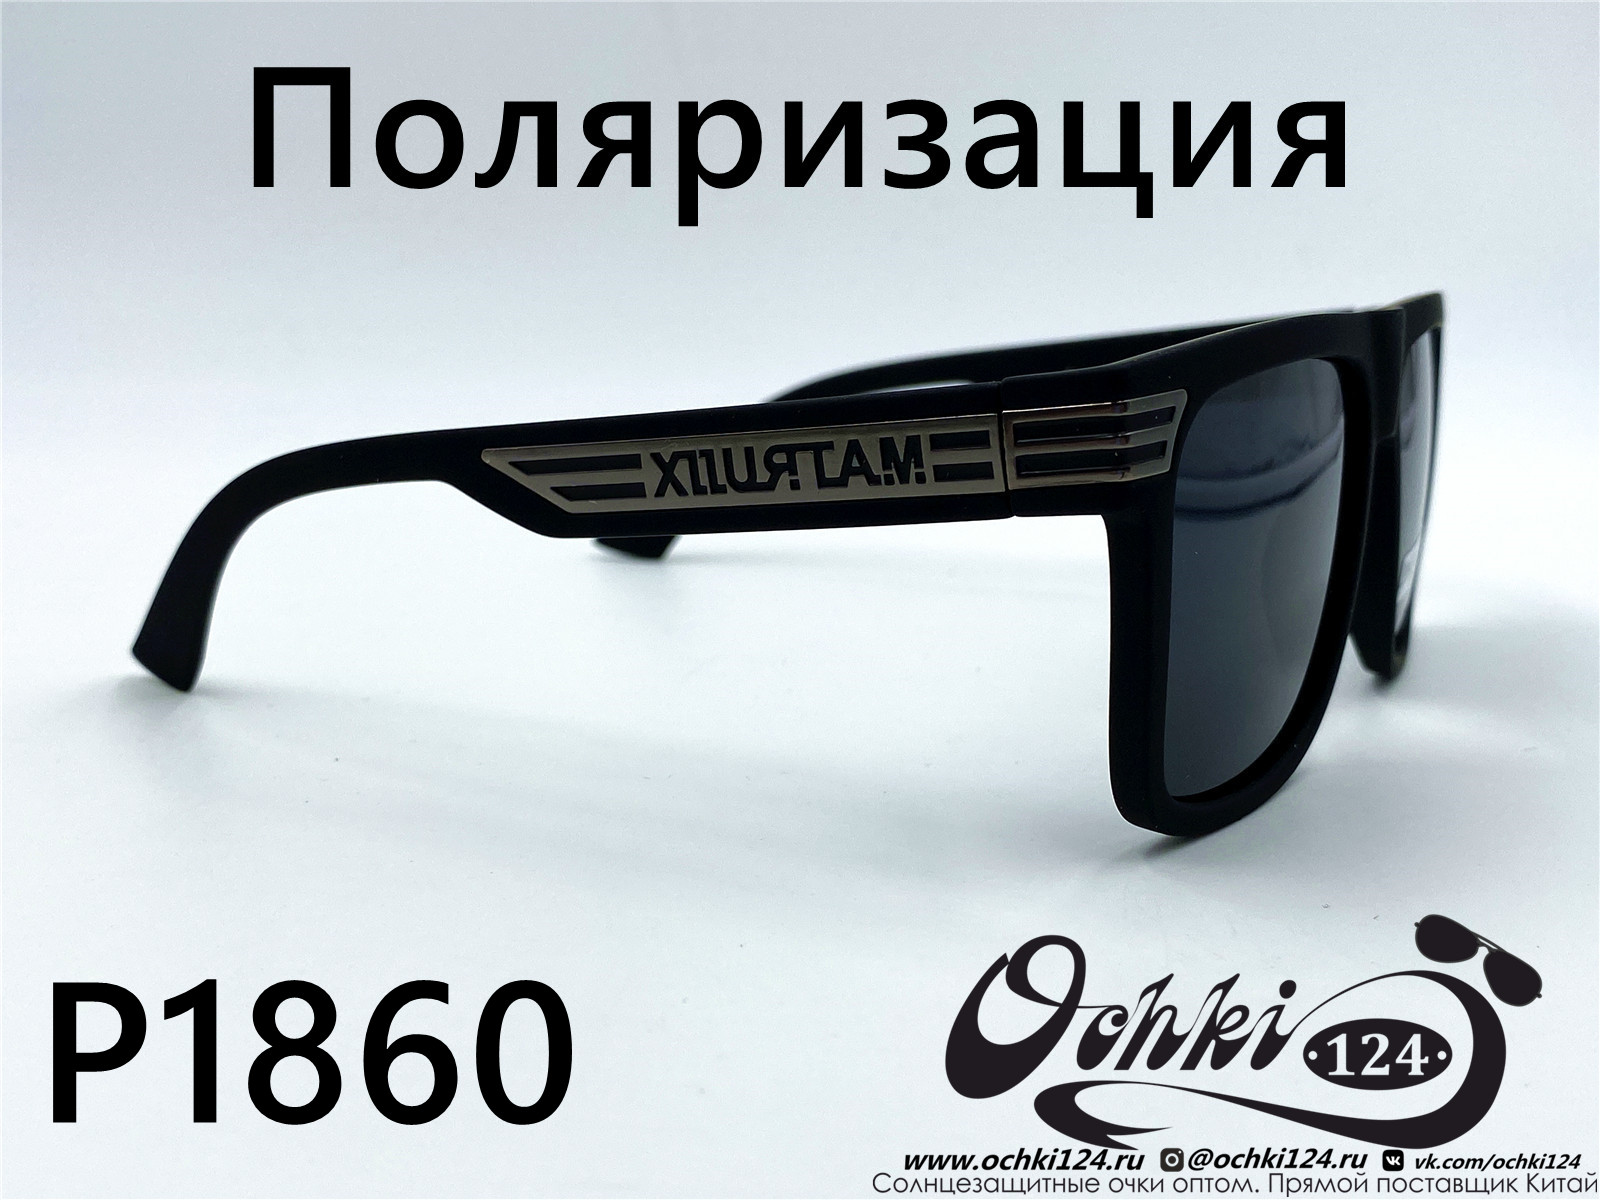  Солнцезащитные очки картинка 2022 Мужские Поляризованные Квадратные Matlrxs P1860-3 